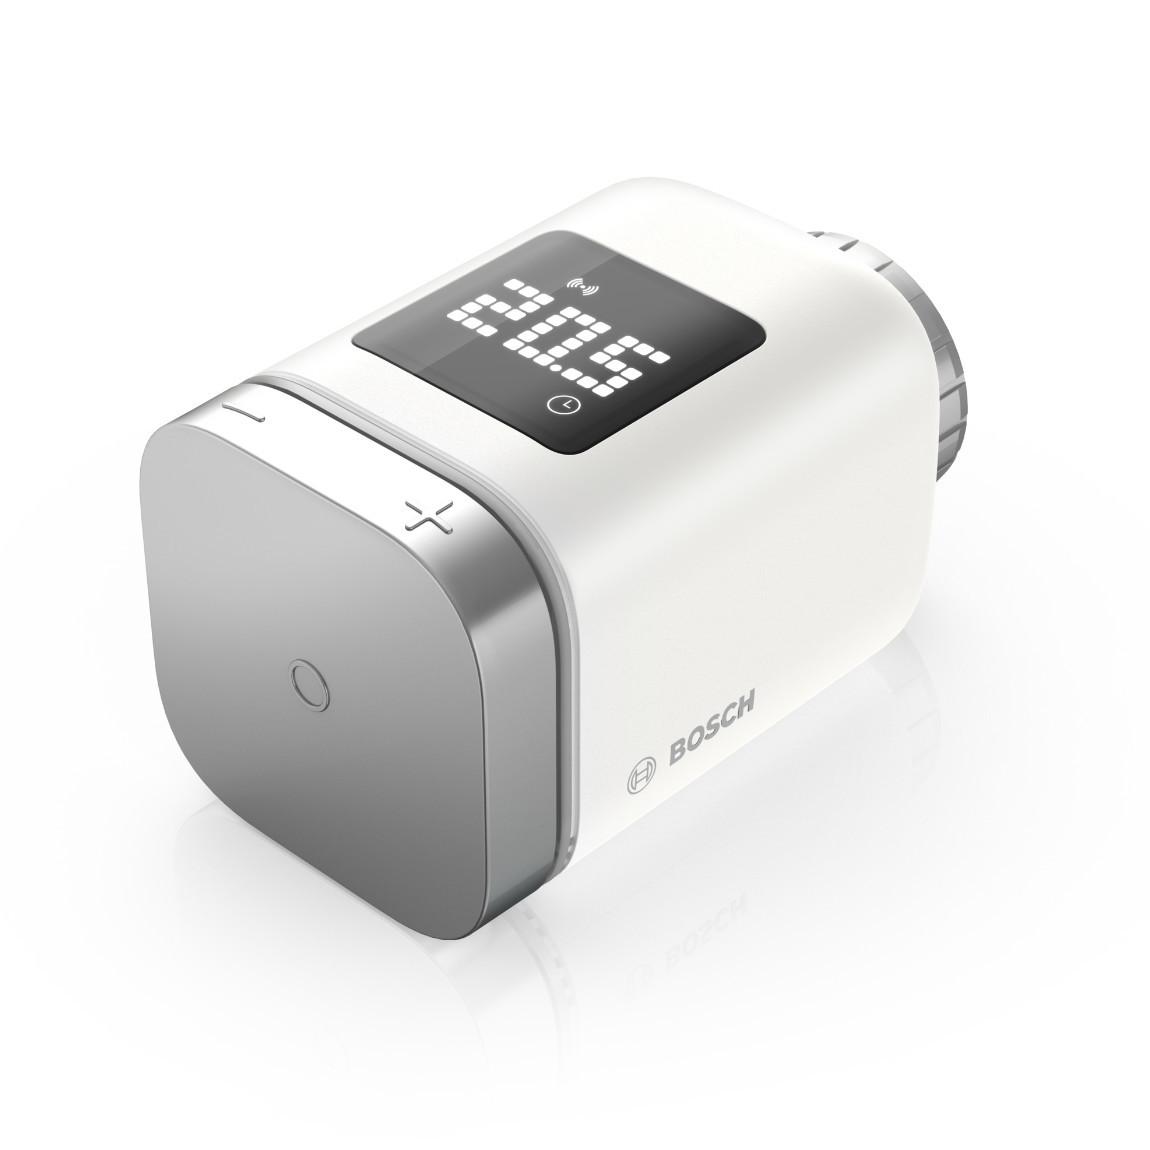 Bosch Smart Home - Starter Set Heizung II mit 8 Thermostaten_Thermostat schraeg